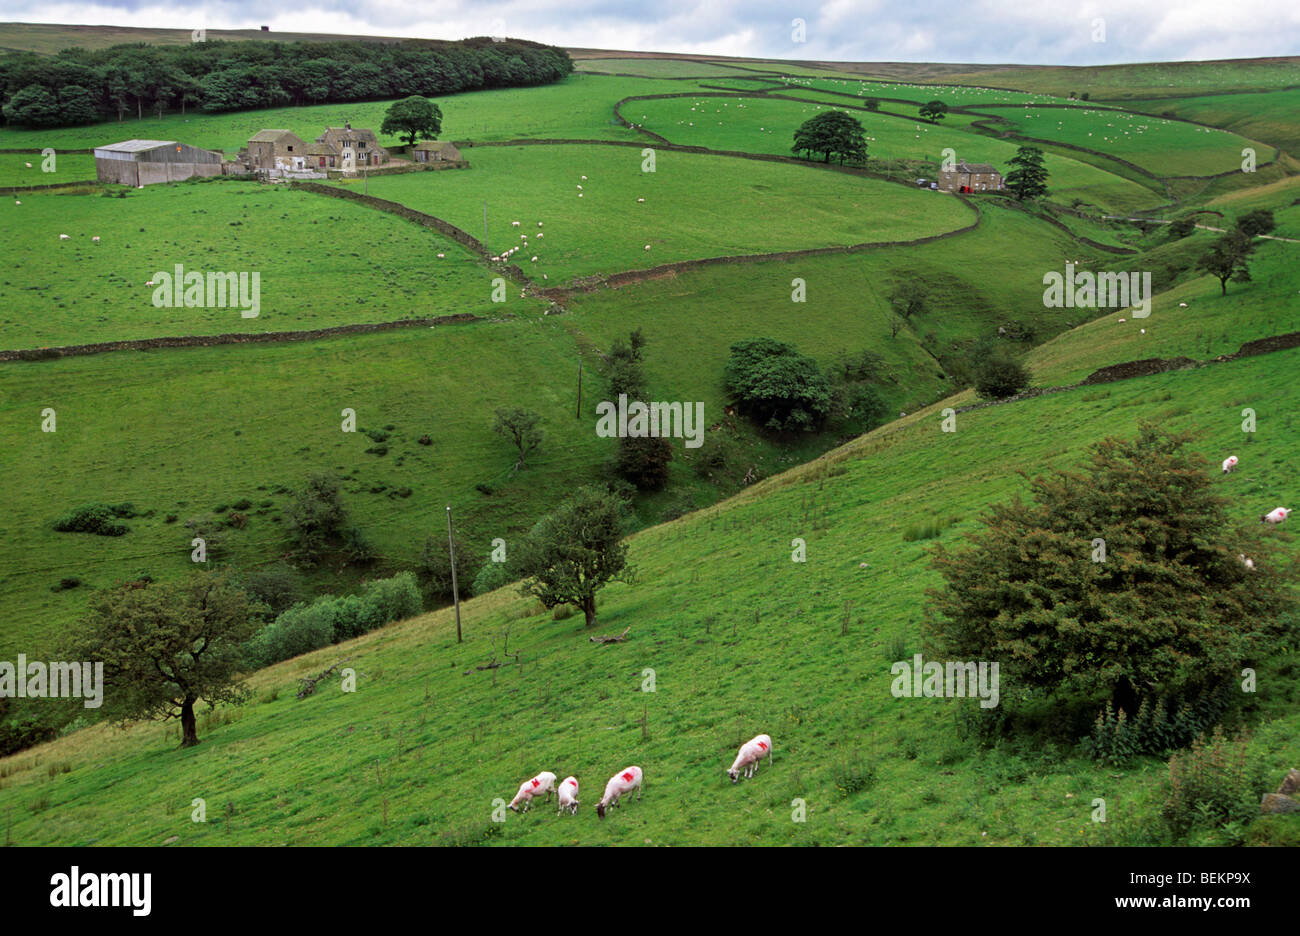 Bauernhaus und Schafe (Ovis Aries) auf Wiese mit Steinmauern in Yorkshire, England, UK Stockfoto